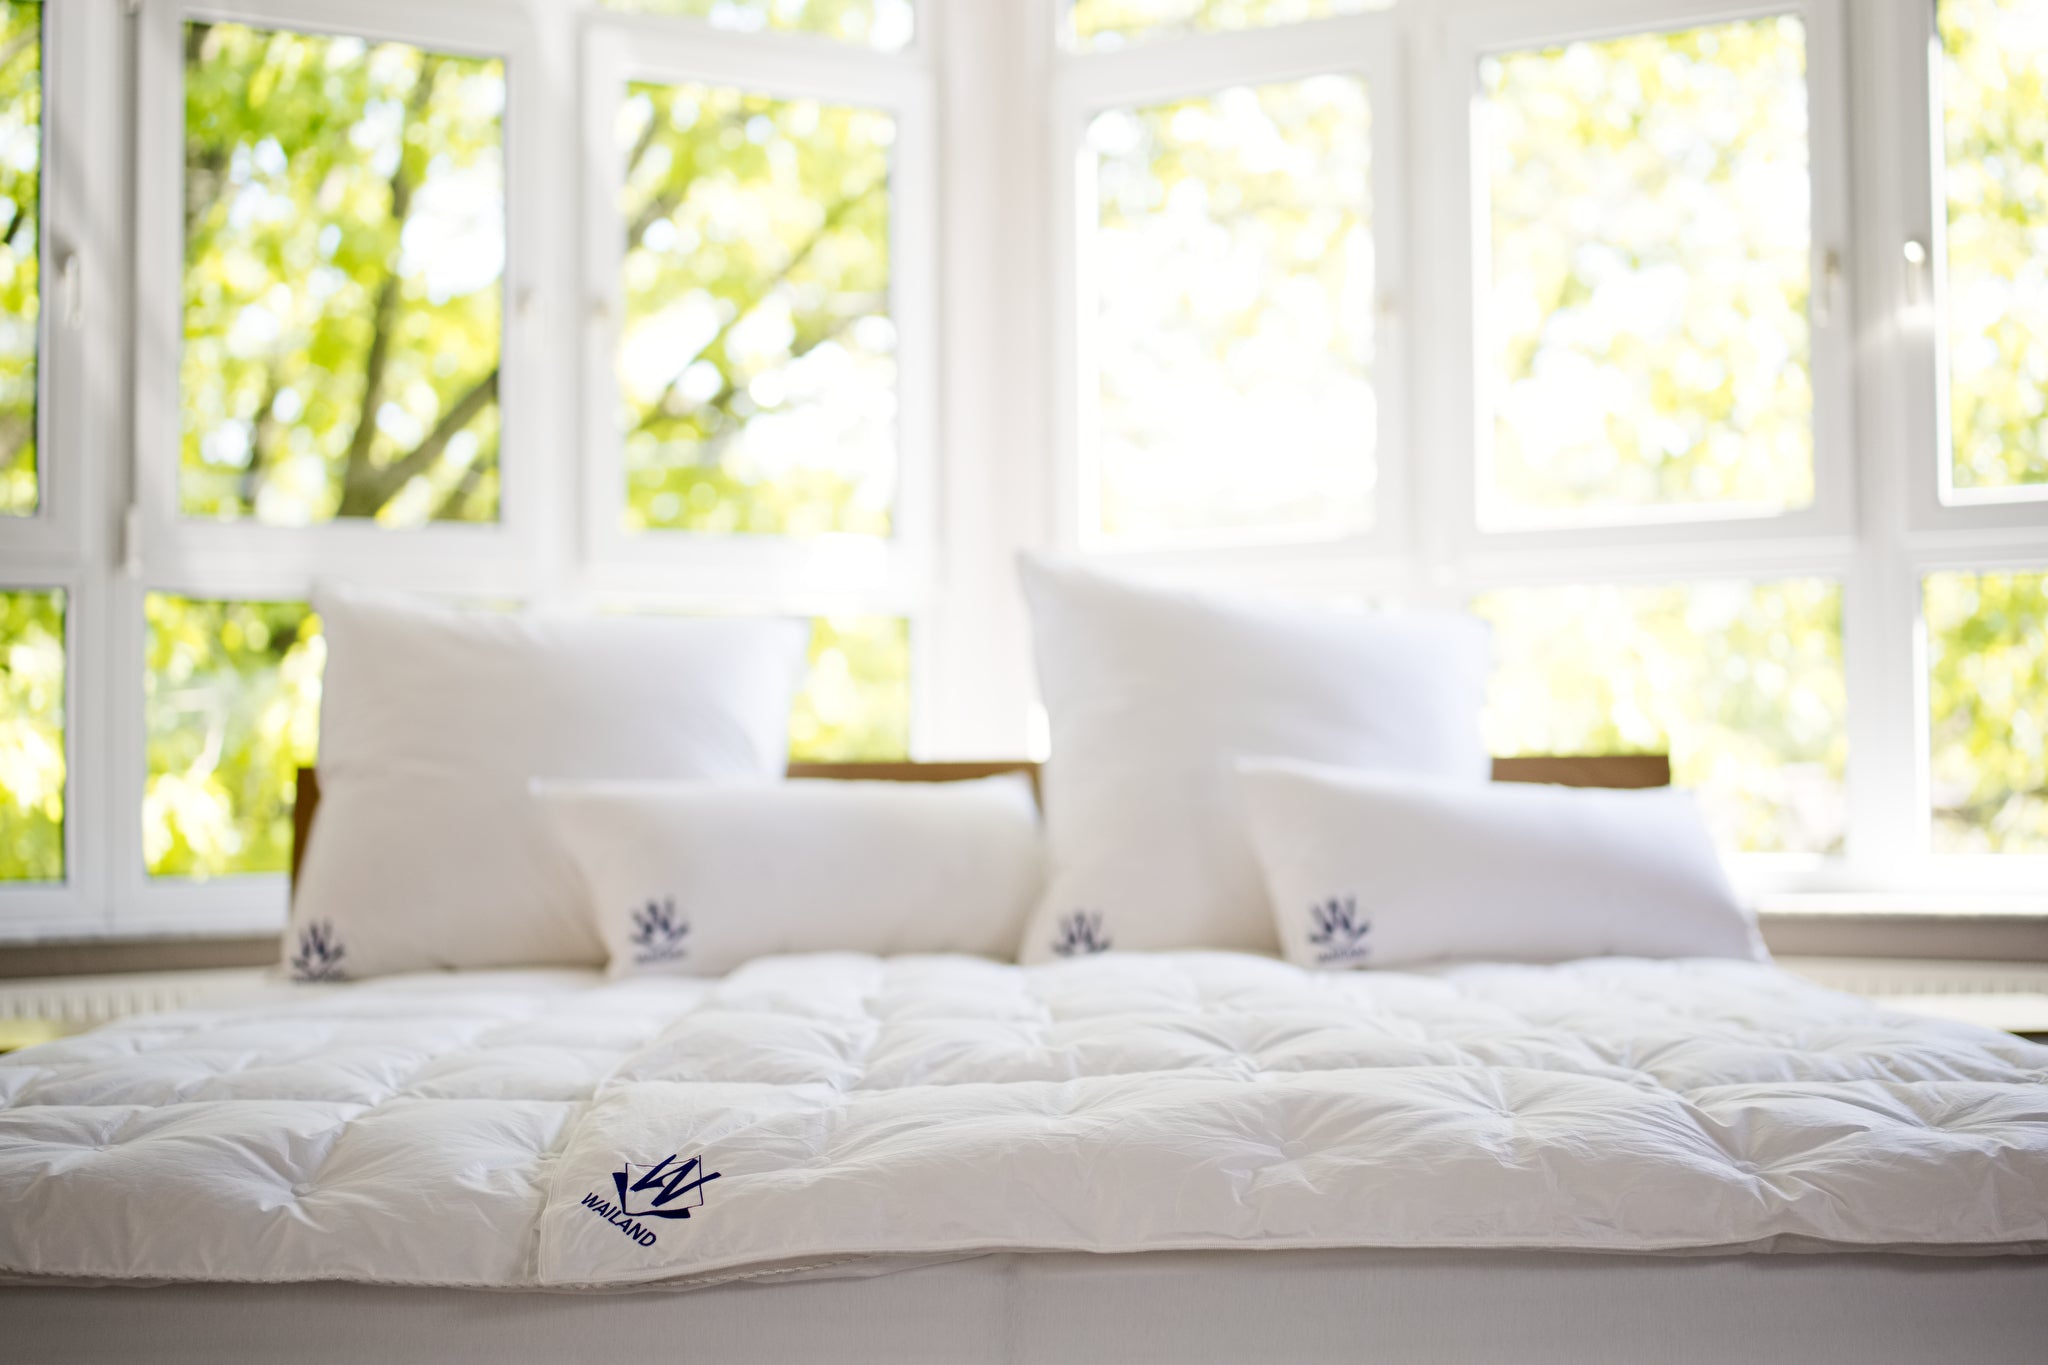 Wailand Bettwaren, Decken und Kissen im Bettenfachgeschäft Wailand in Heiningen bei Göppingen